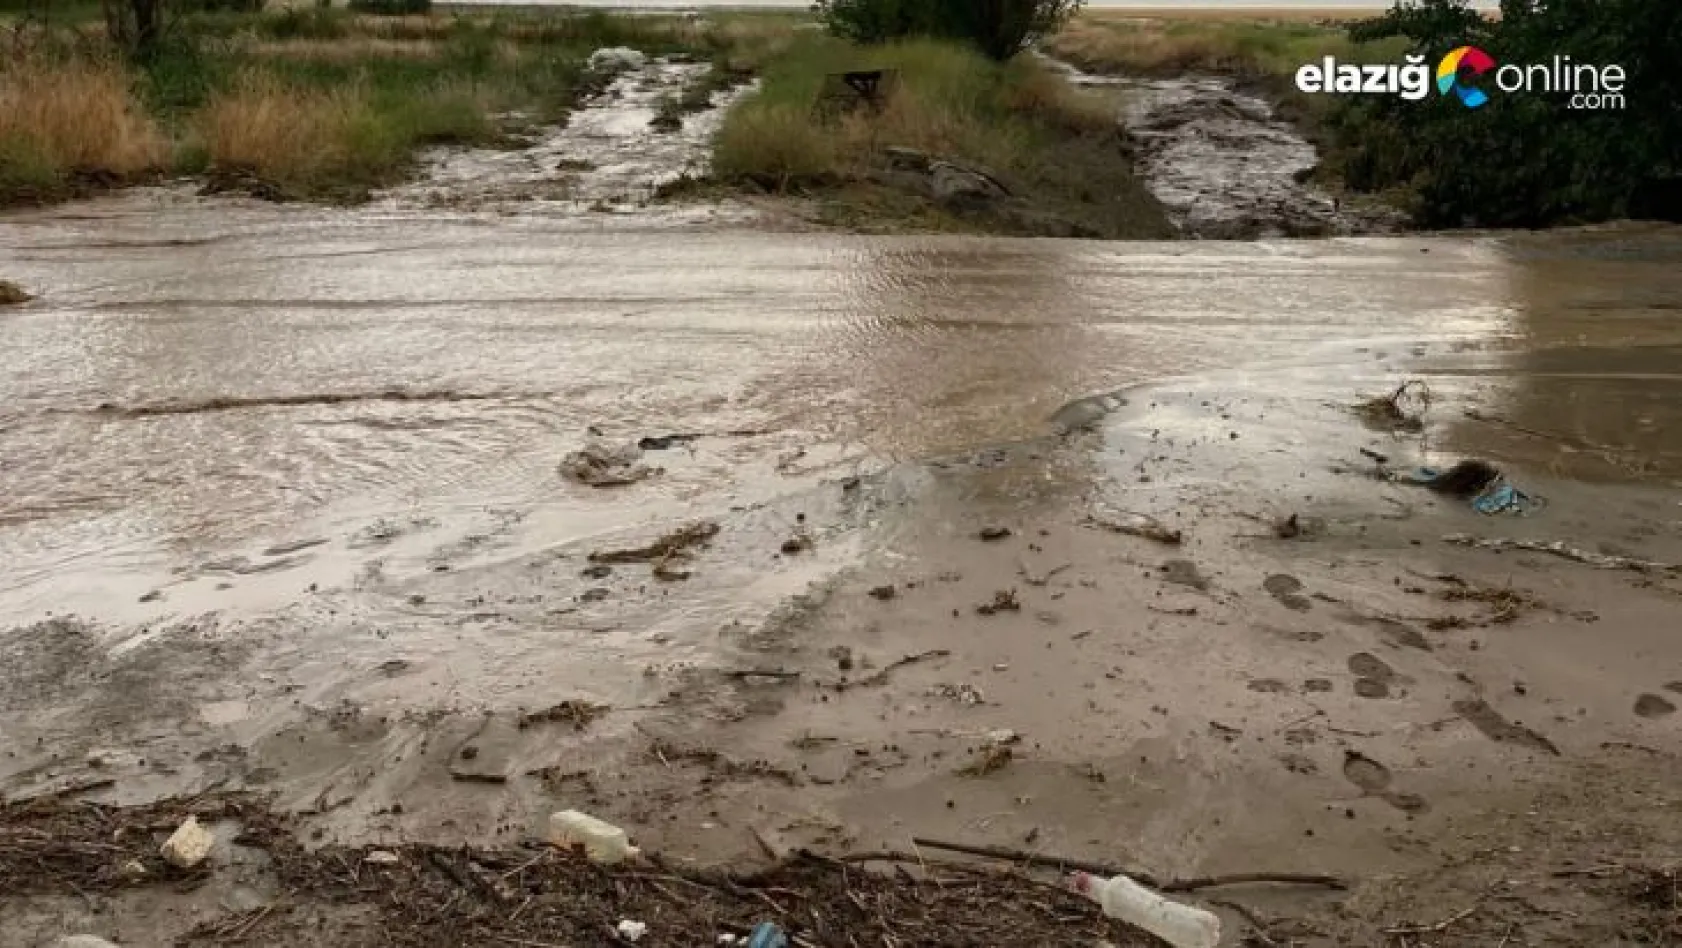 Elazığ'da tarım arazilerini sel vurdu